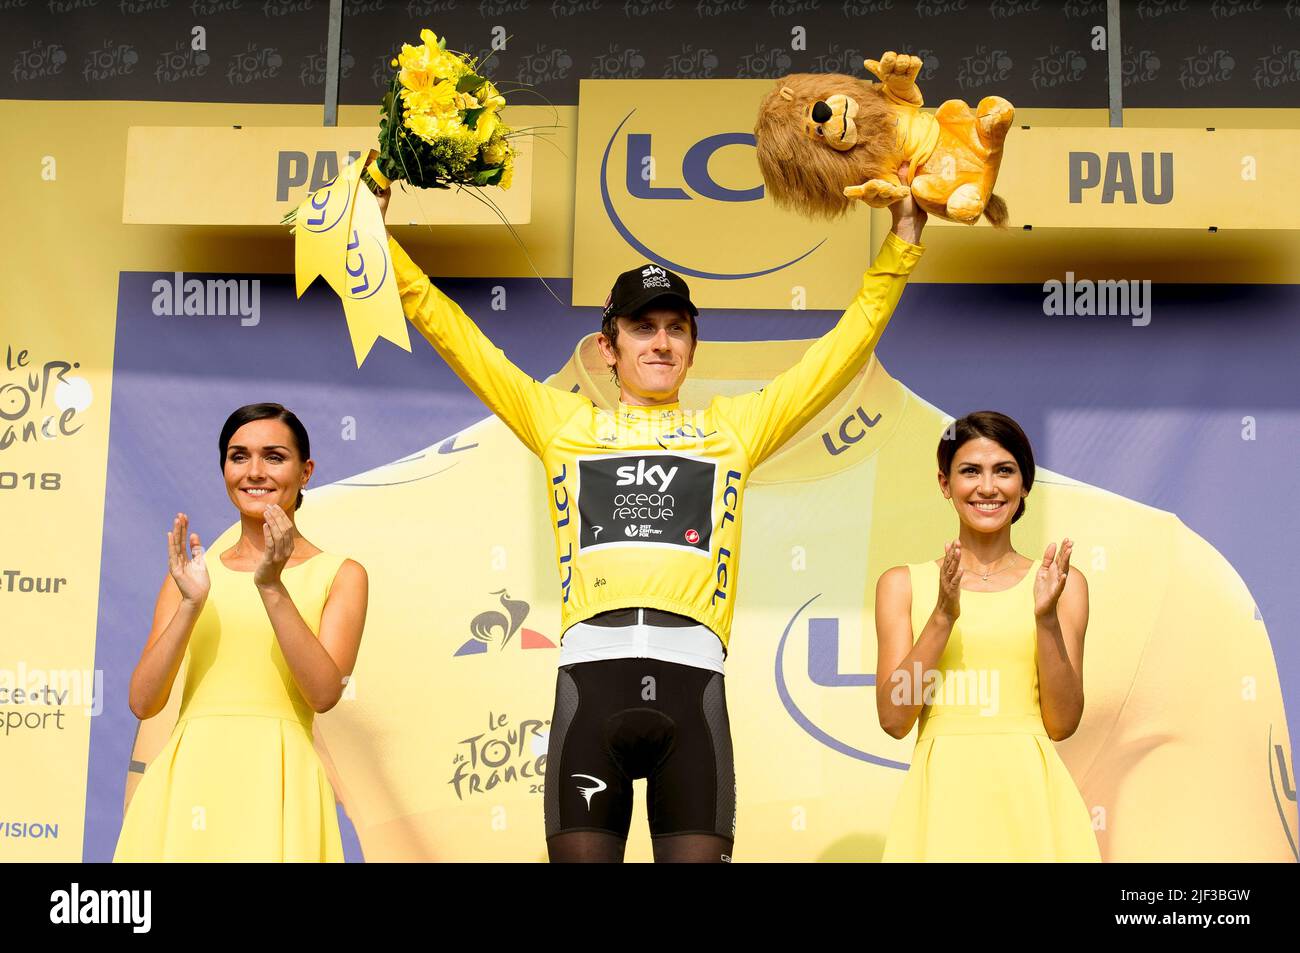 Foto del archivo fechada el 26-07-2018 de Geraint Thomas del equipo Sky. Hay esperanzas de que Geraint Thomas, ganador del Tour de Suisse hace menos de dos semanas, tiene la forma de desafío para el amarillo. Fecha de emisión: Miércoles 29 de junio de 2022. Foto de stock